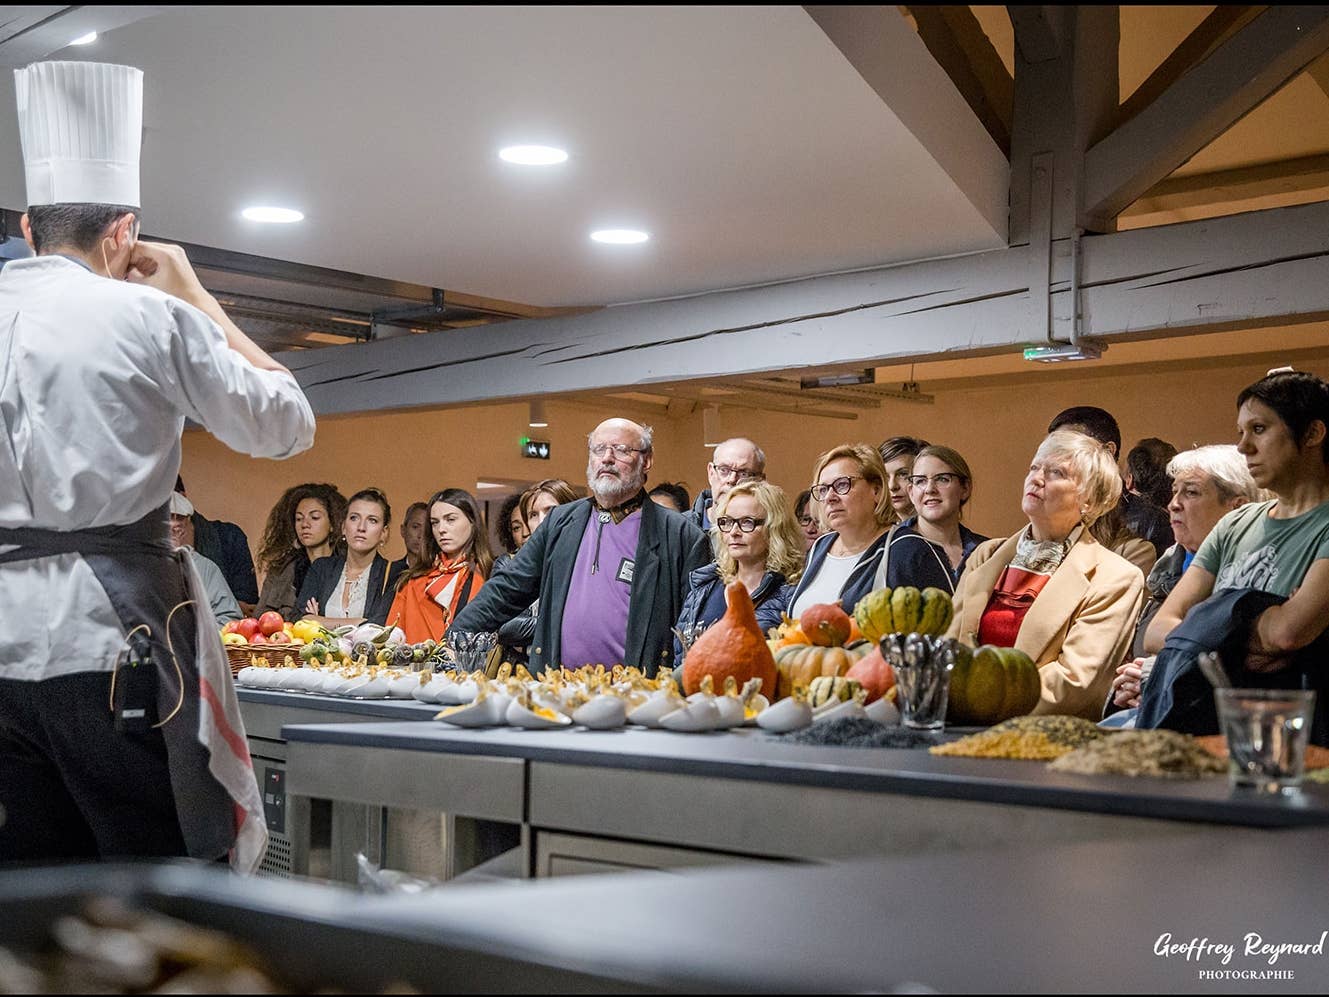 Lyon’s New ‘Cité Internationale de la Gastronomie’ Leaves Some Visitors Hungry